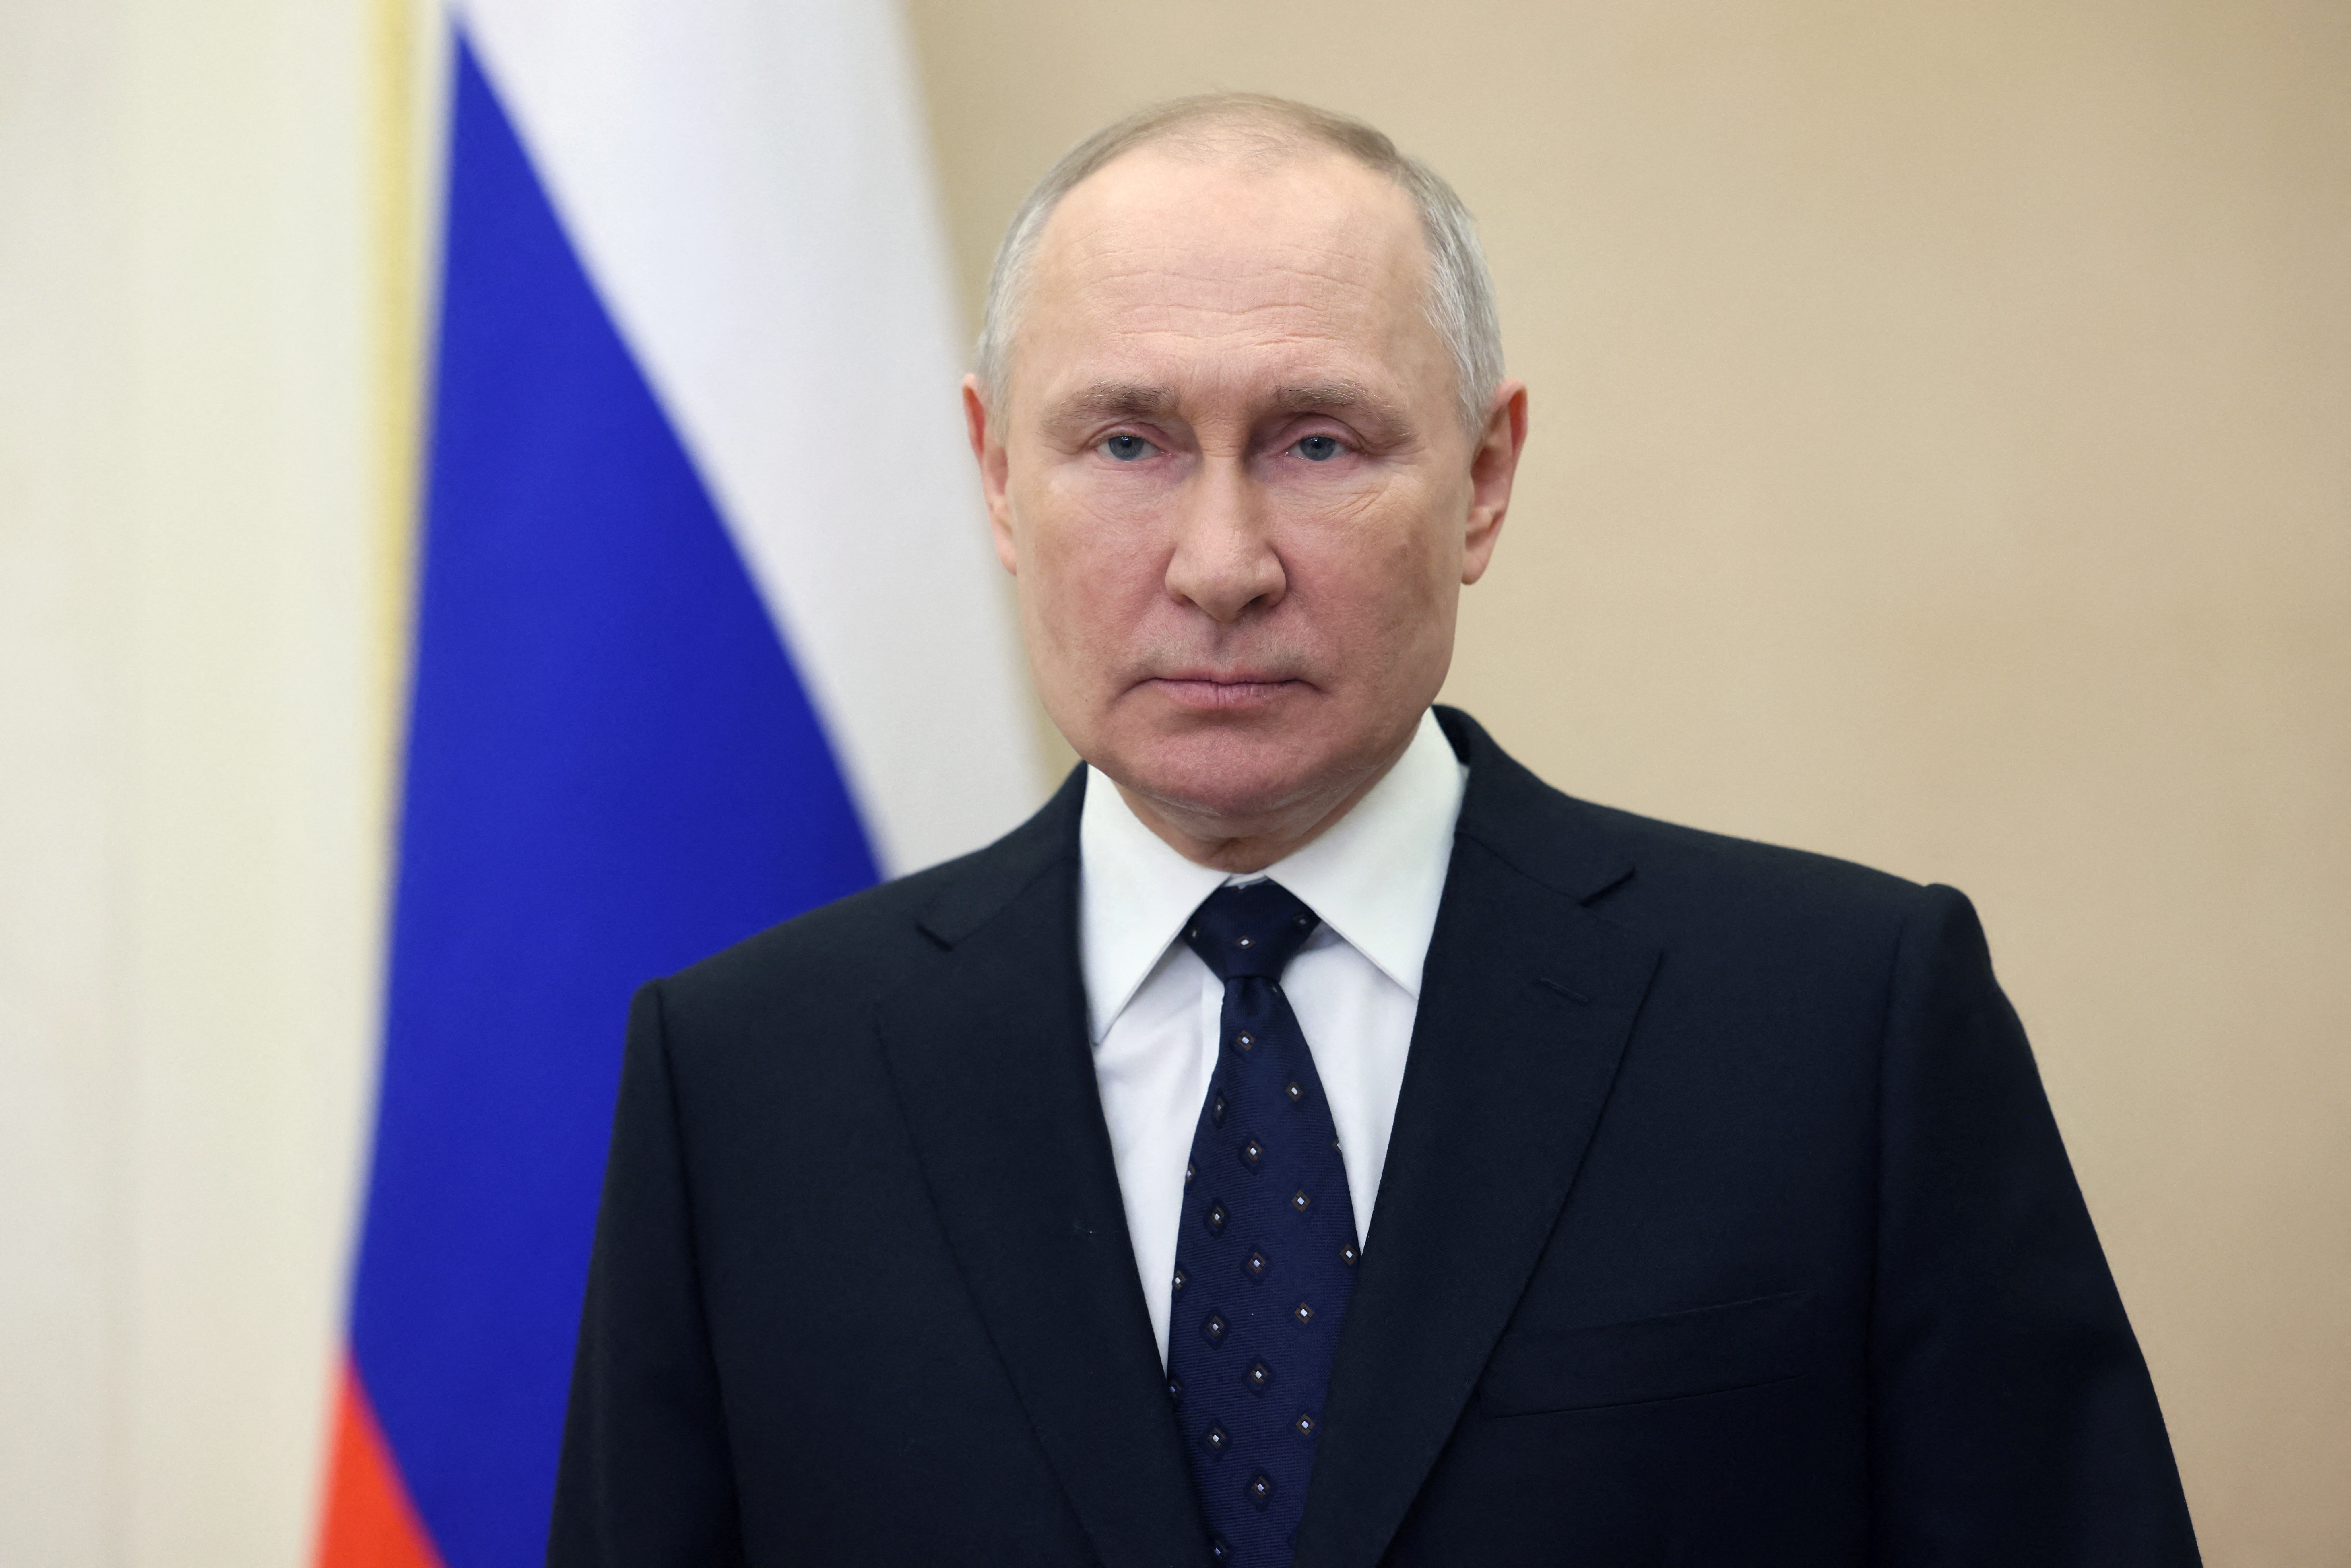 Esta semana estuvo marcada por el discurso de Putin reafirmando su intención de mantener la invasión a Ucrania y anunciando su retirada del tratado de desarme nuclear New Start firmado en 2010 con Estados Unidos. (REUTERS)